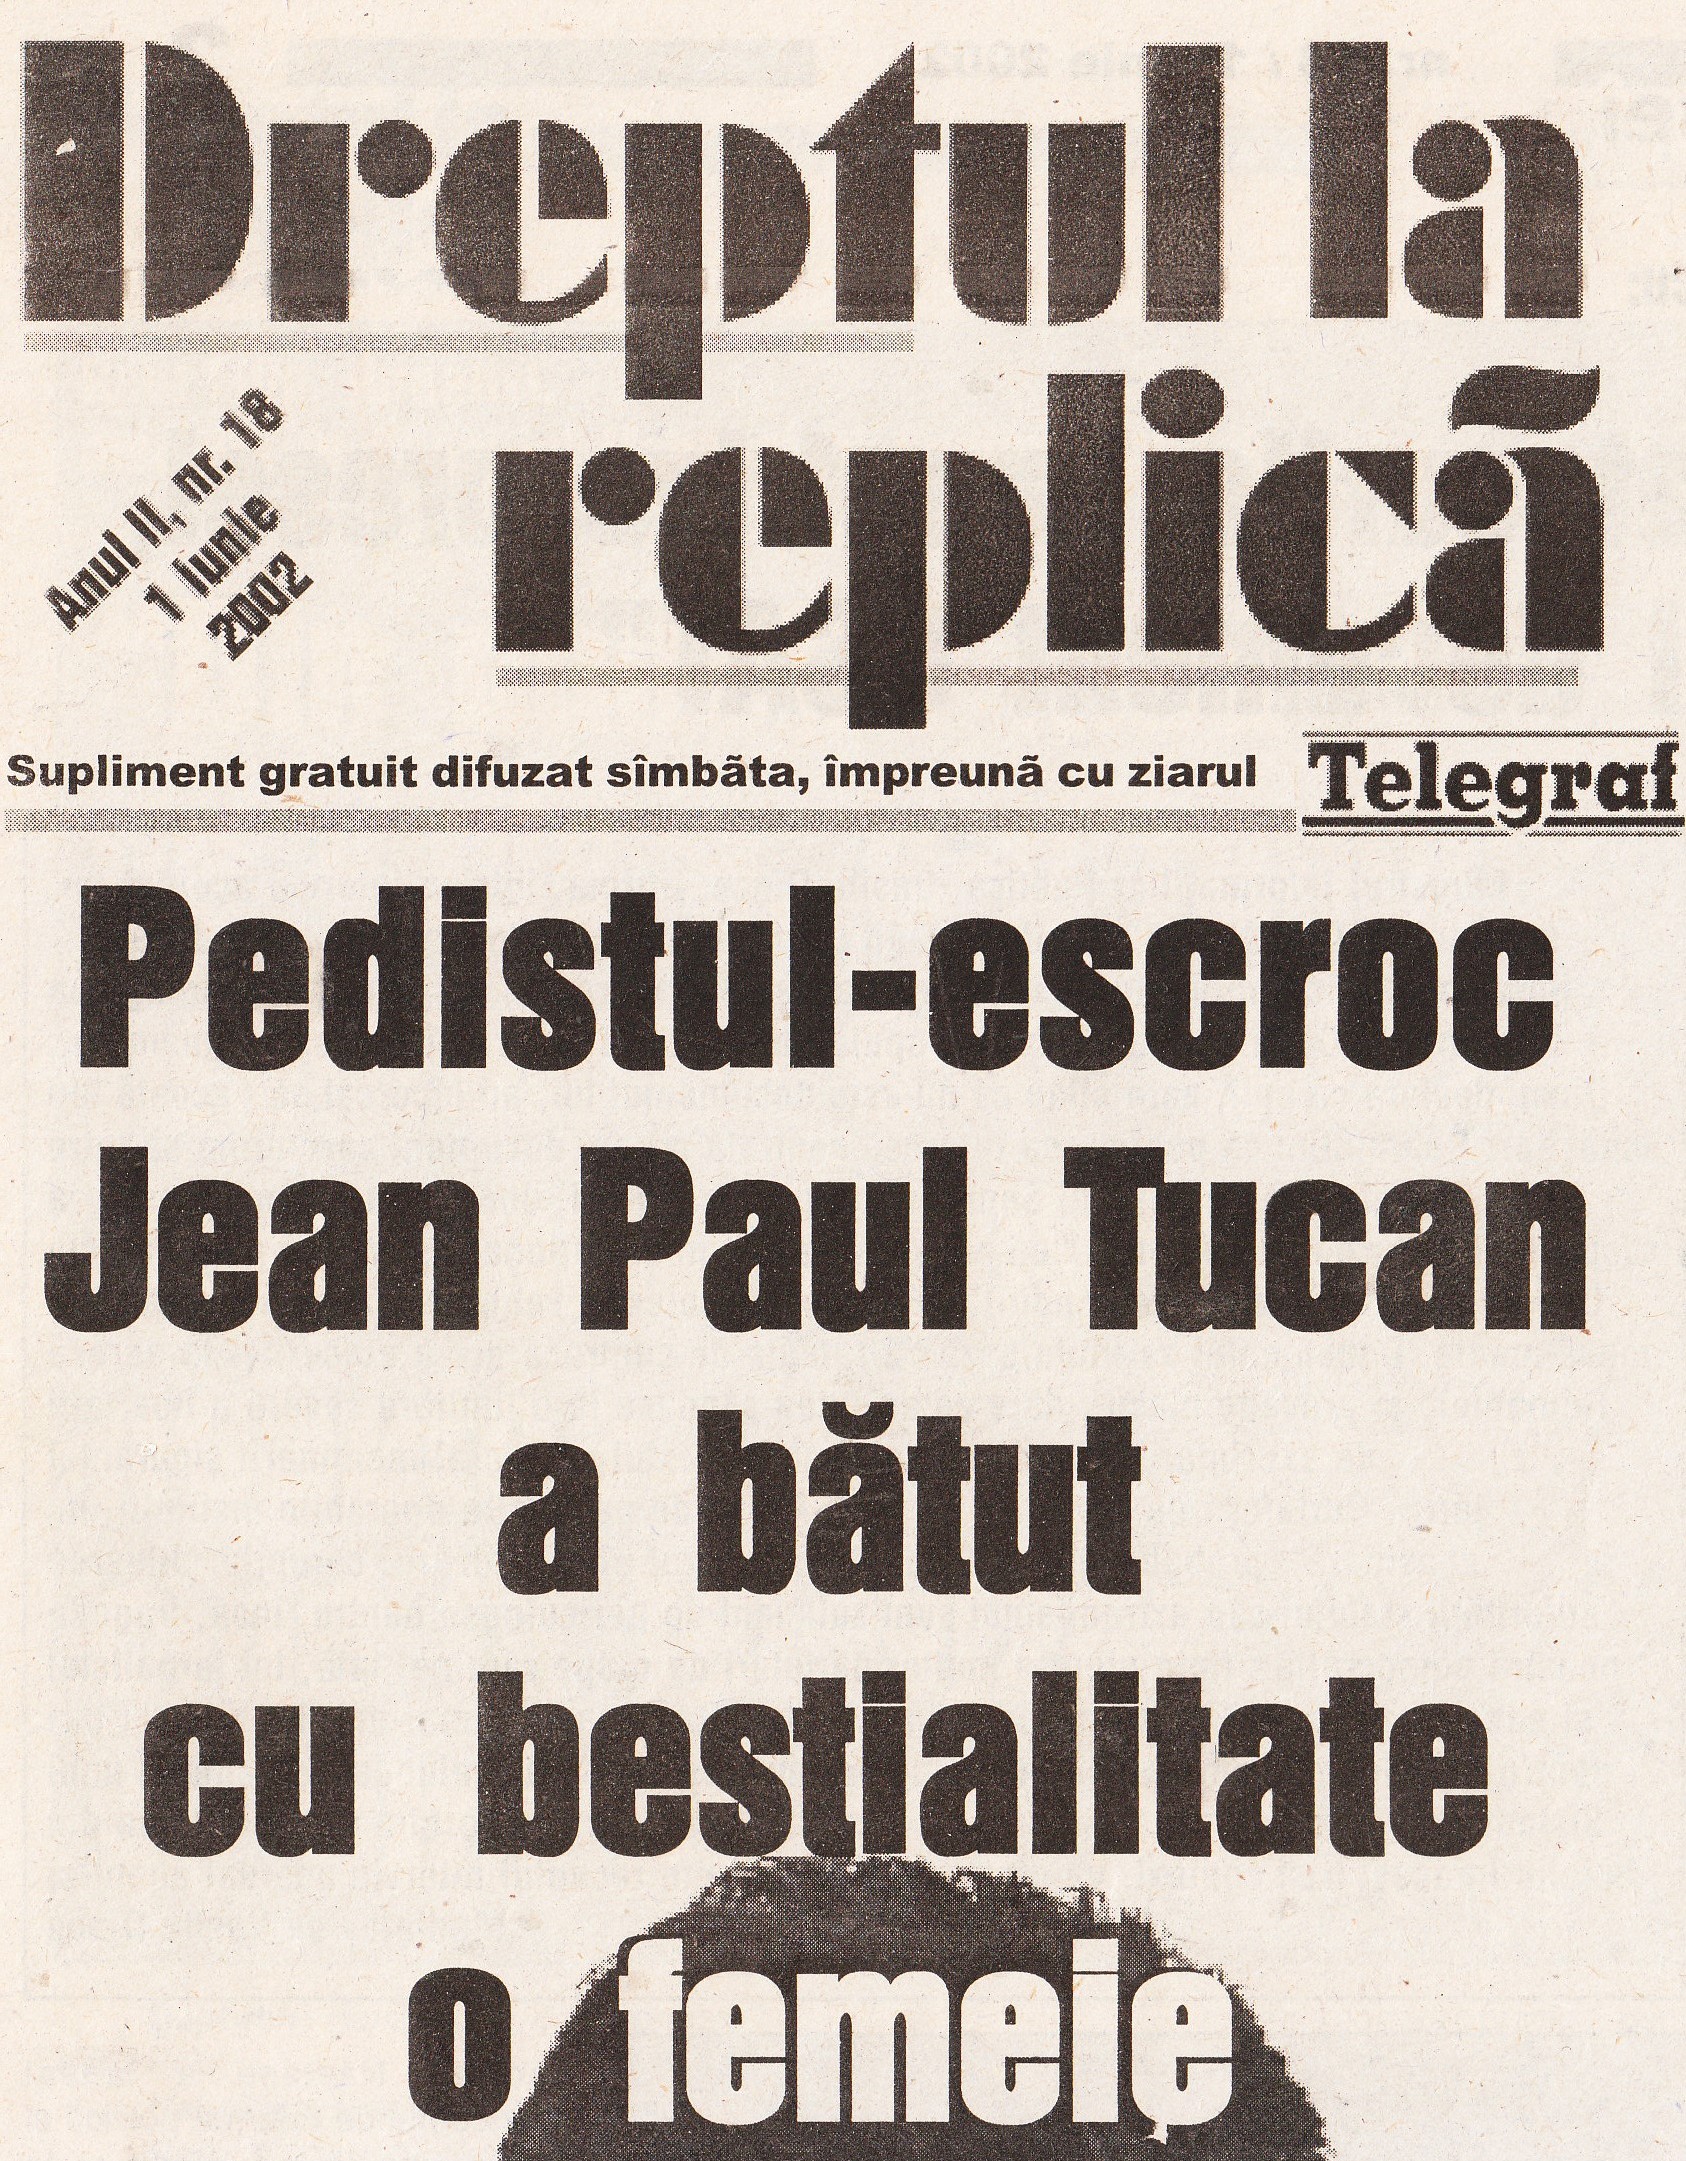 Dreptul la replica, nr. 18 - 1 iunie 2002 - {edistul-escroc Jean Paul Tucan a batut cu bestialitate o femeie.